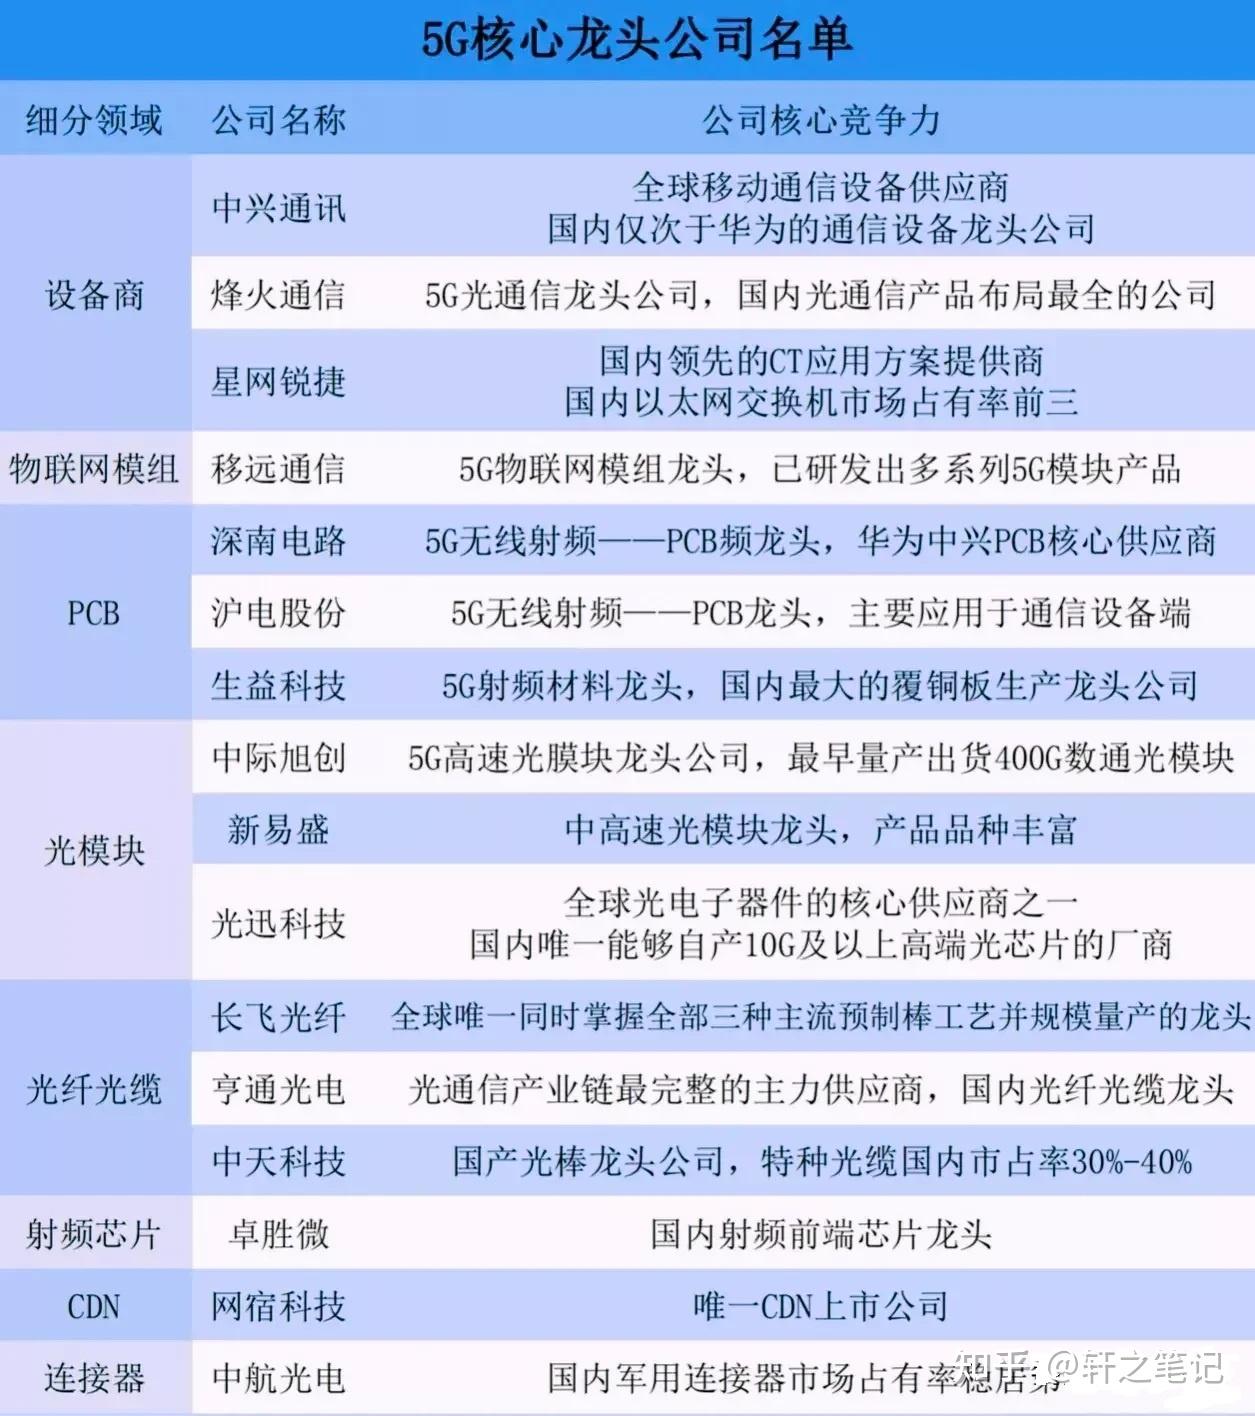 中国股市:半导体芯片龙头股名单一览表!(珍藏版)